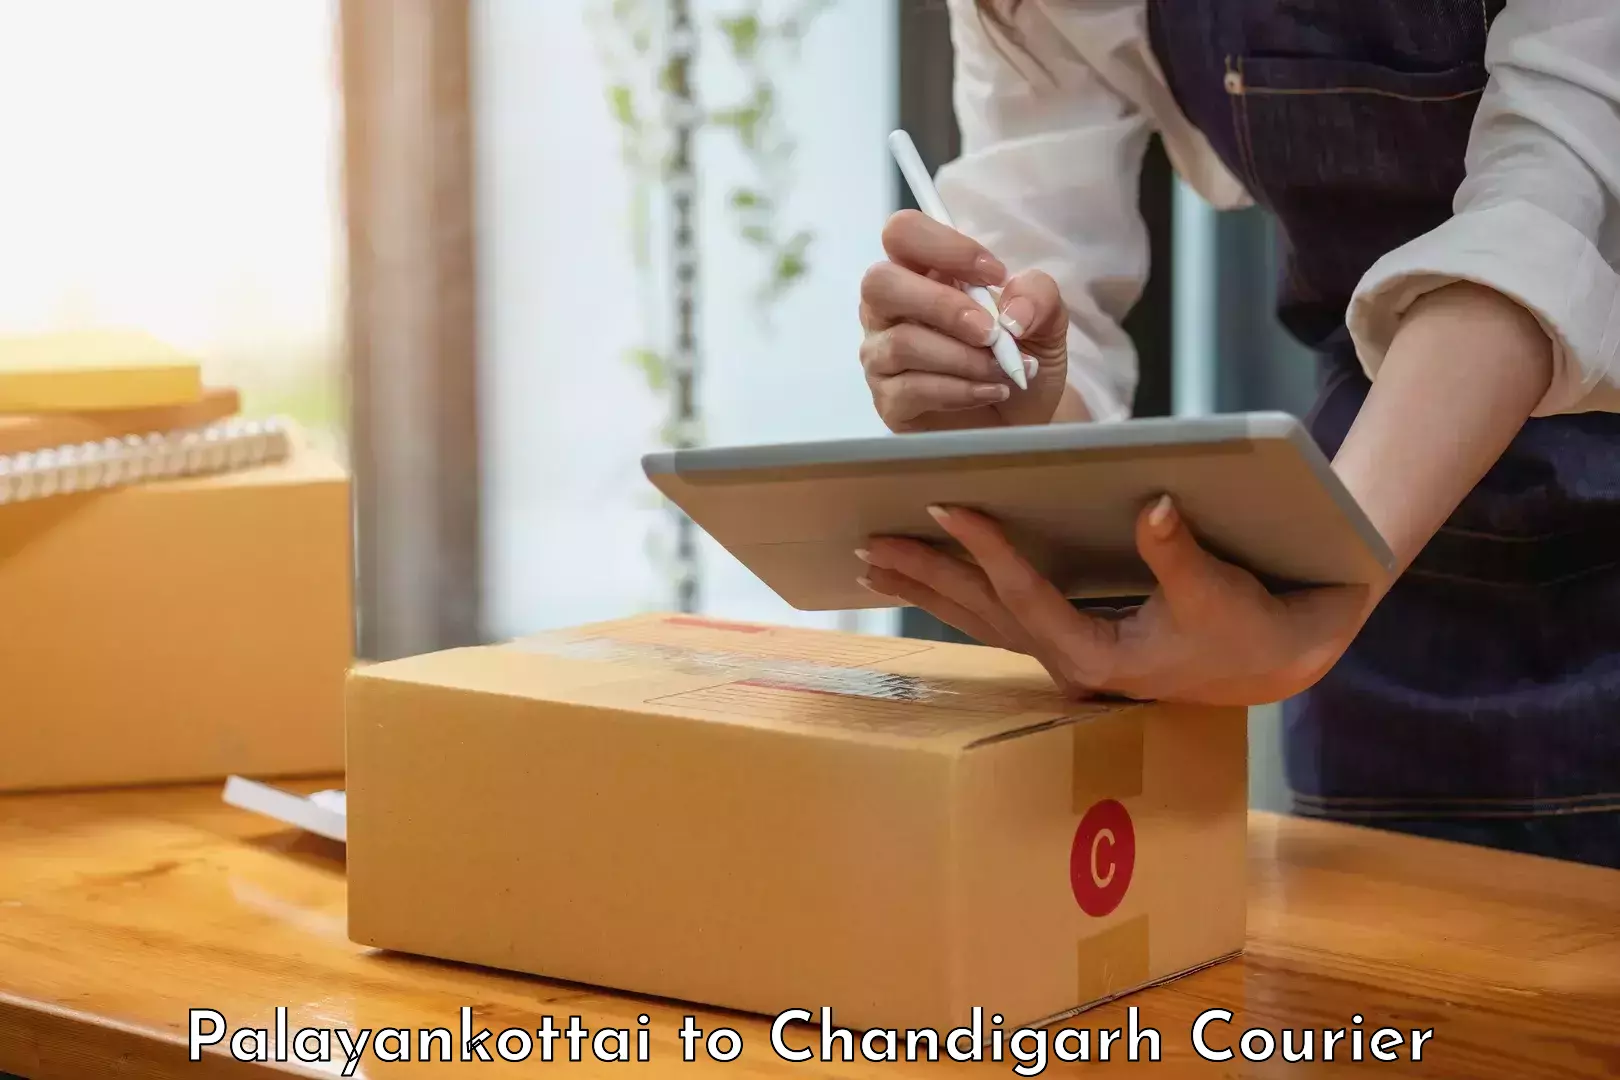 Efficient parcel service Palayankottai to Chandigarh